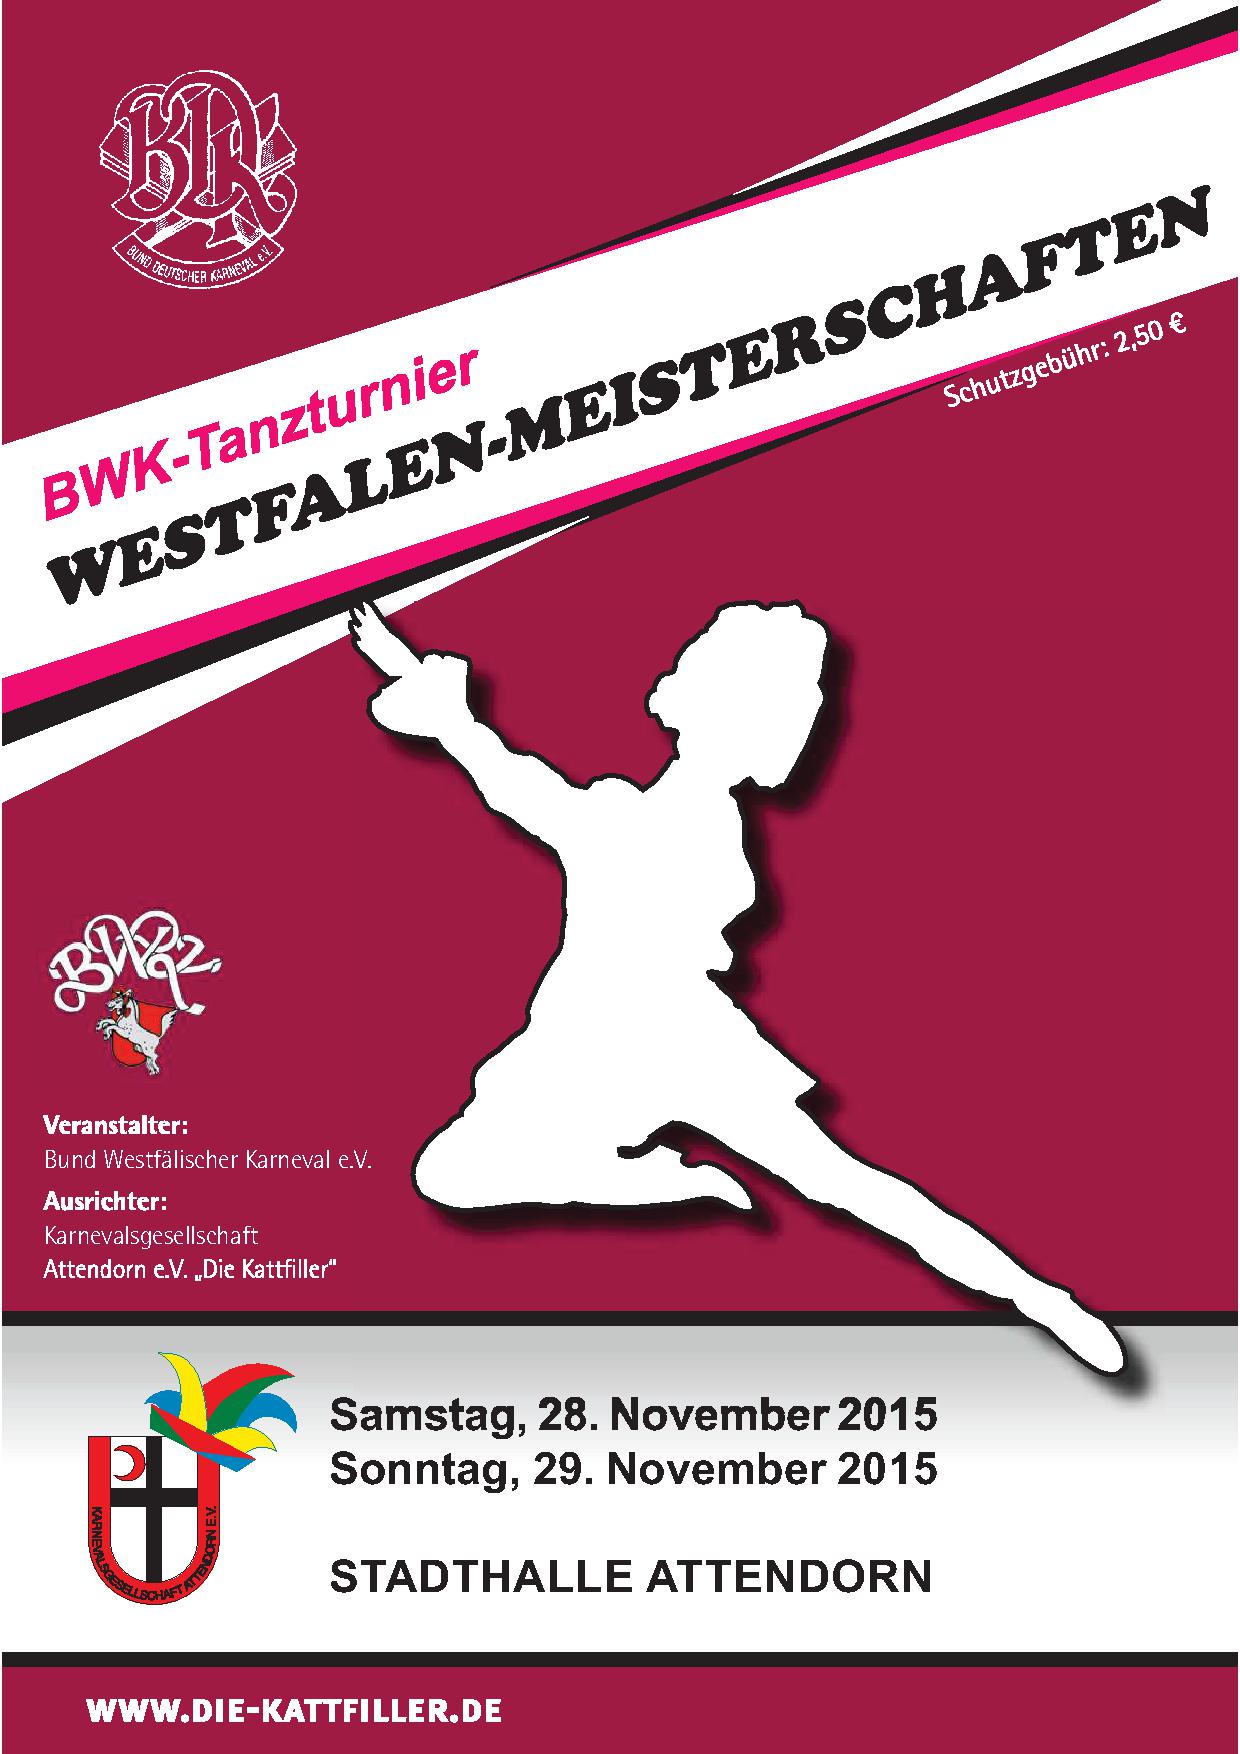 Rückblick BWK-Tanzturnier Westfalenmeisterschaften 2015